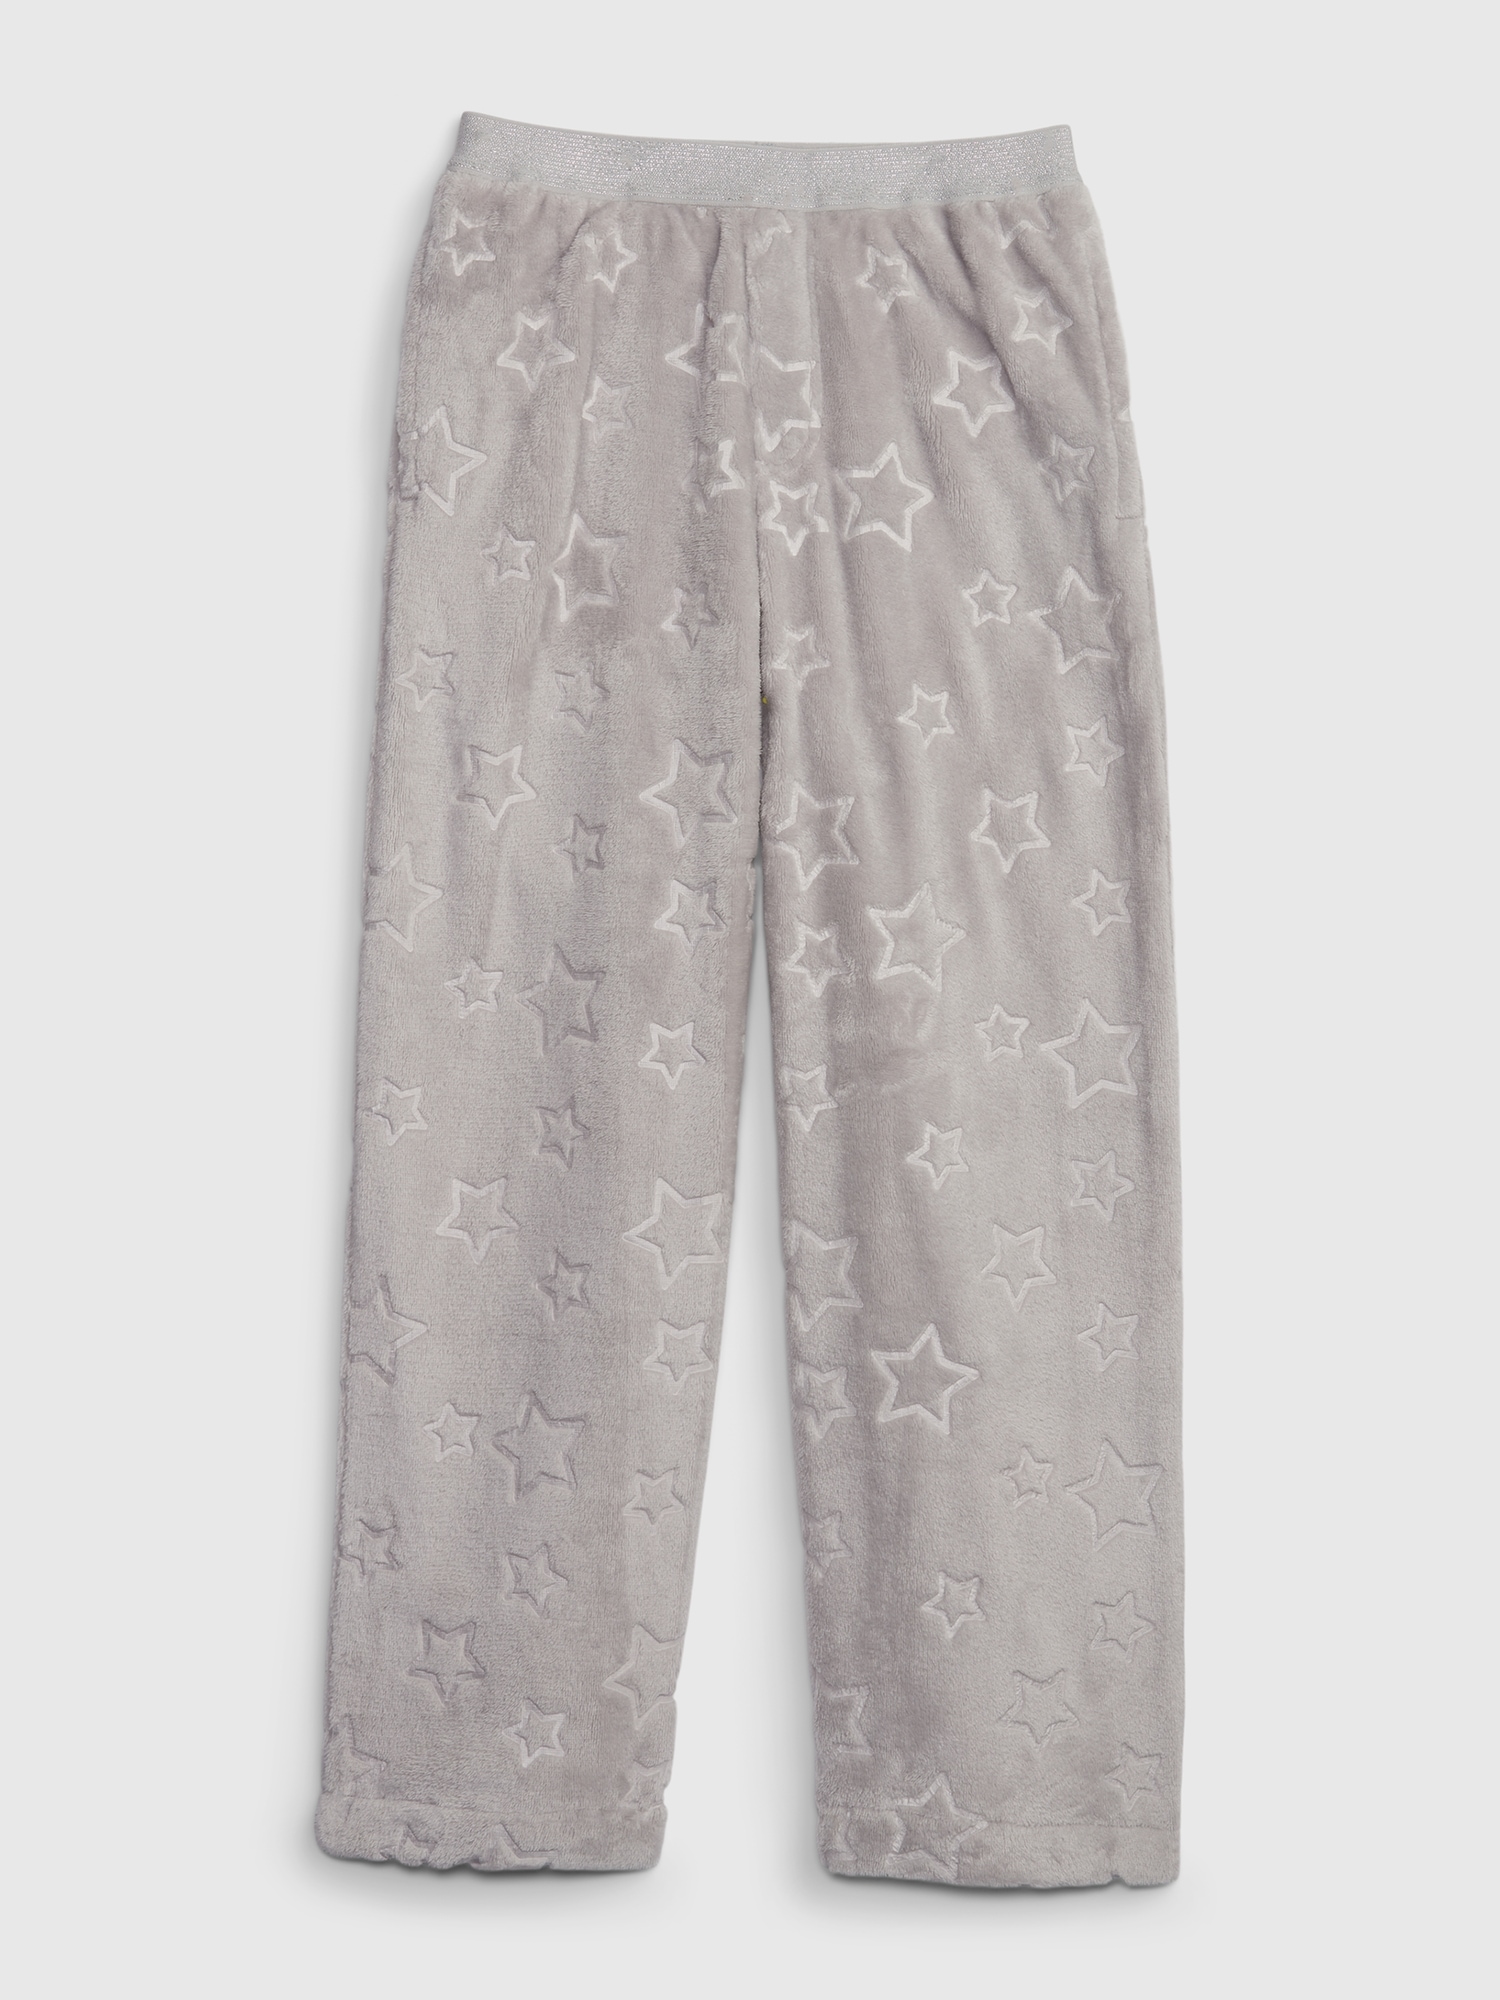 Hanes Men's and Big Men's Woven Stretch Pajama Pants, Size XL - Walmart.com